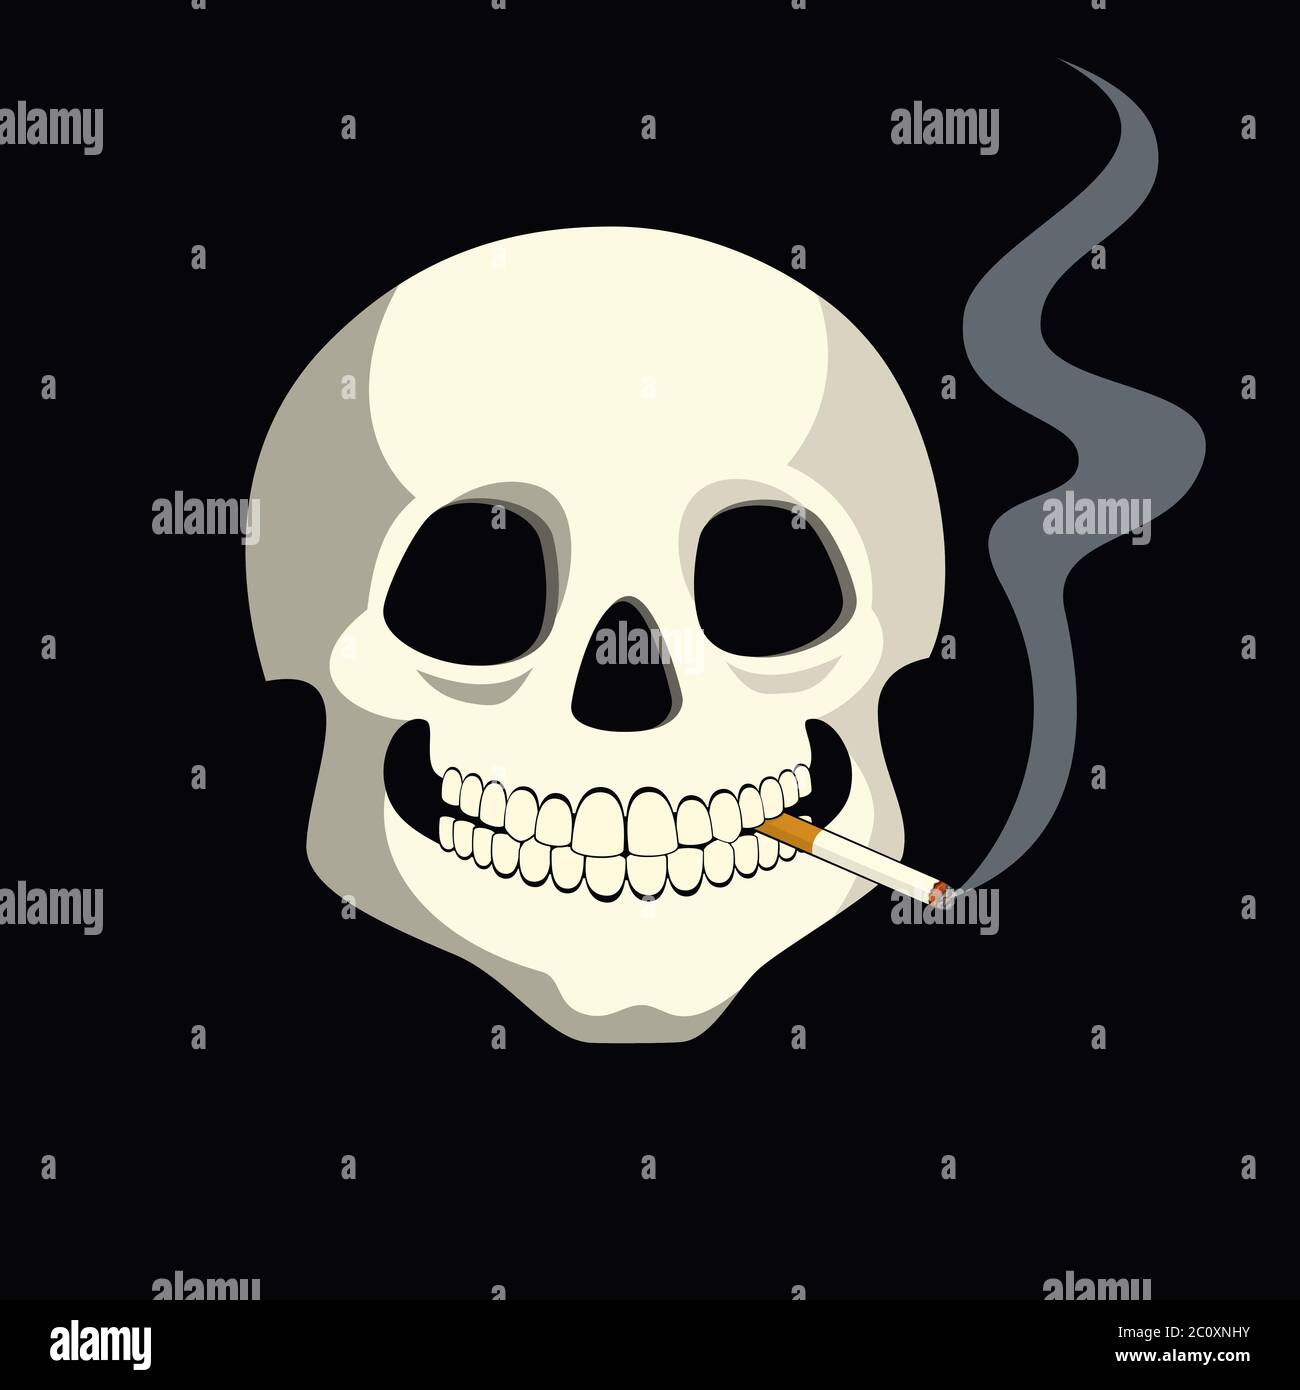 Illustration vectorielle d'un crâne humain avec une cigarette brûlante entre ses dents. Illustration de Vecteur